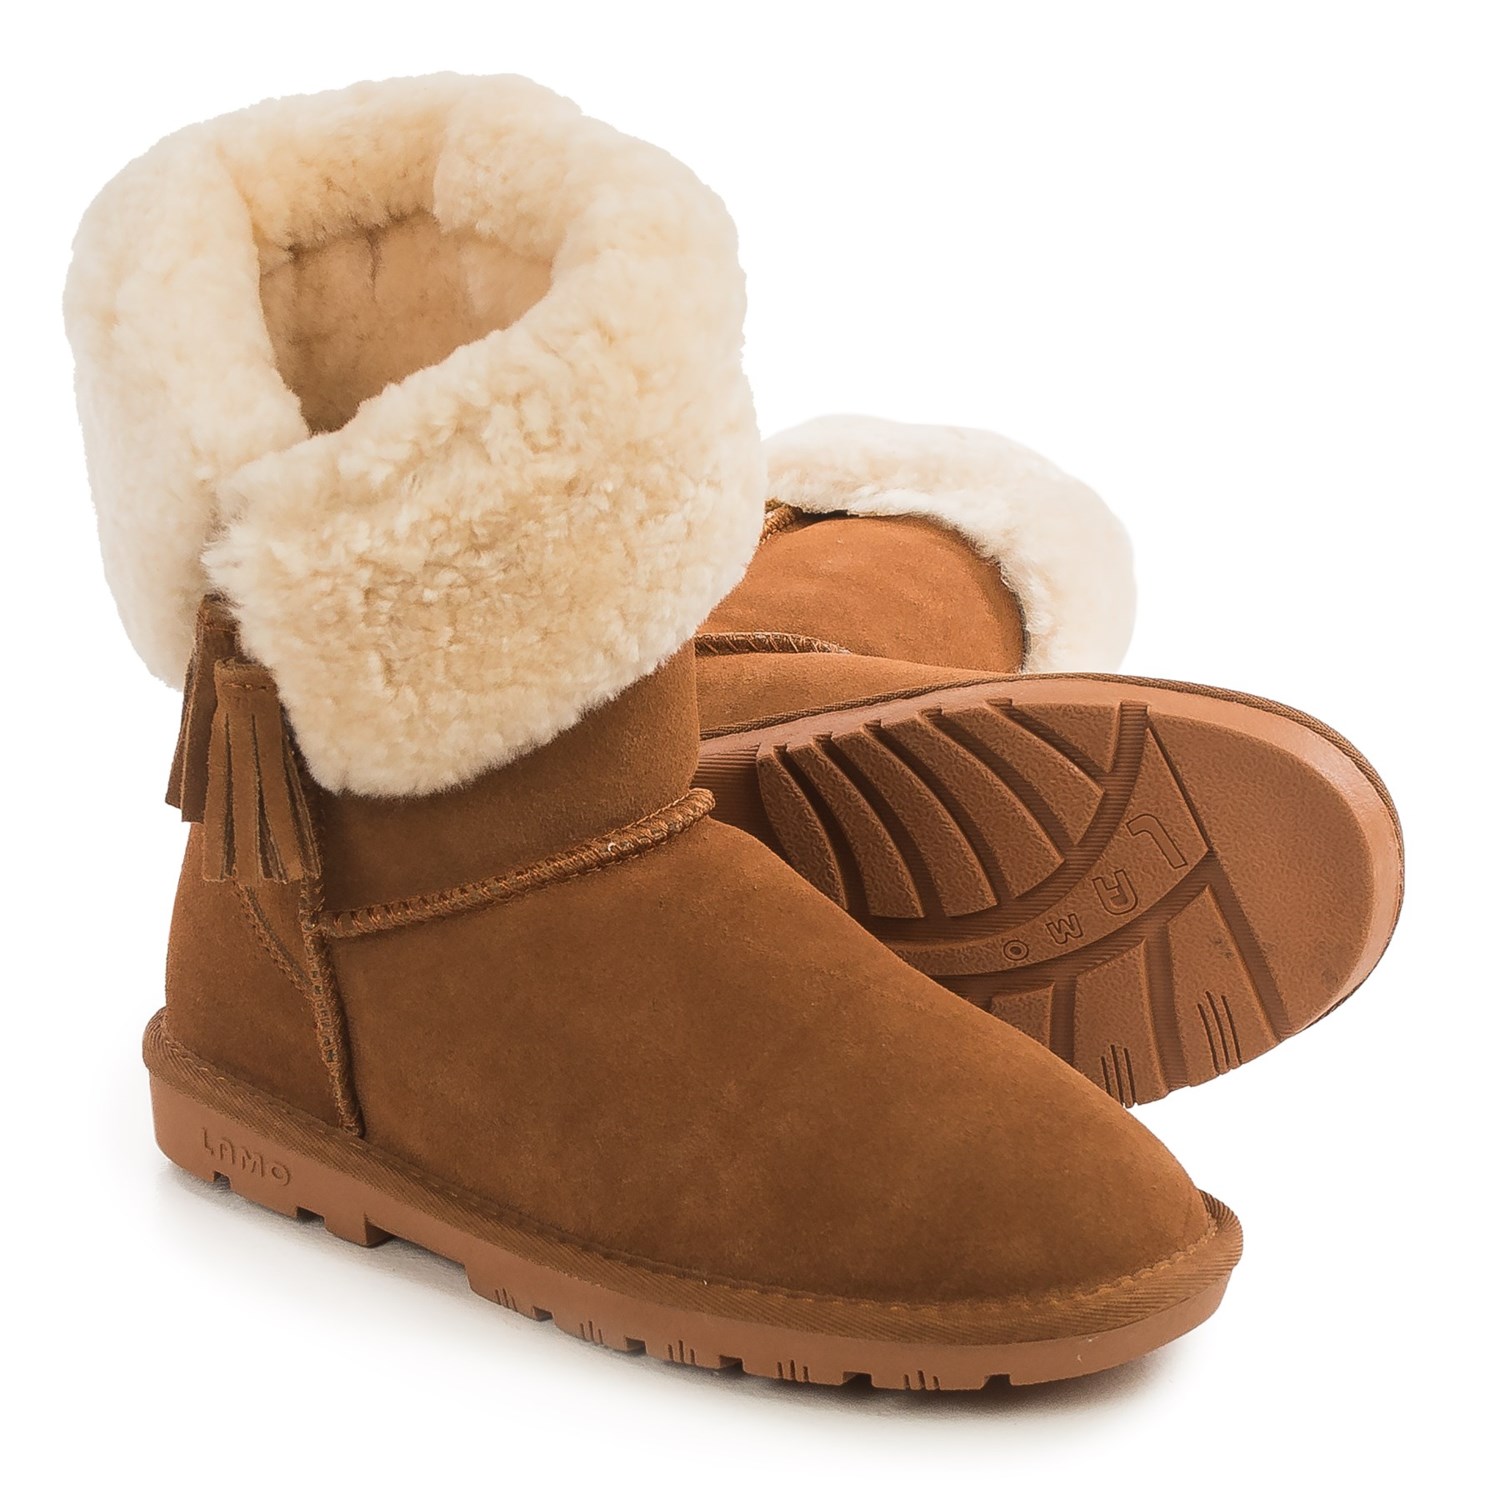 LAMO Footwear Kye Tassel Sheepskin Boots (For Women) - Save 50%